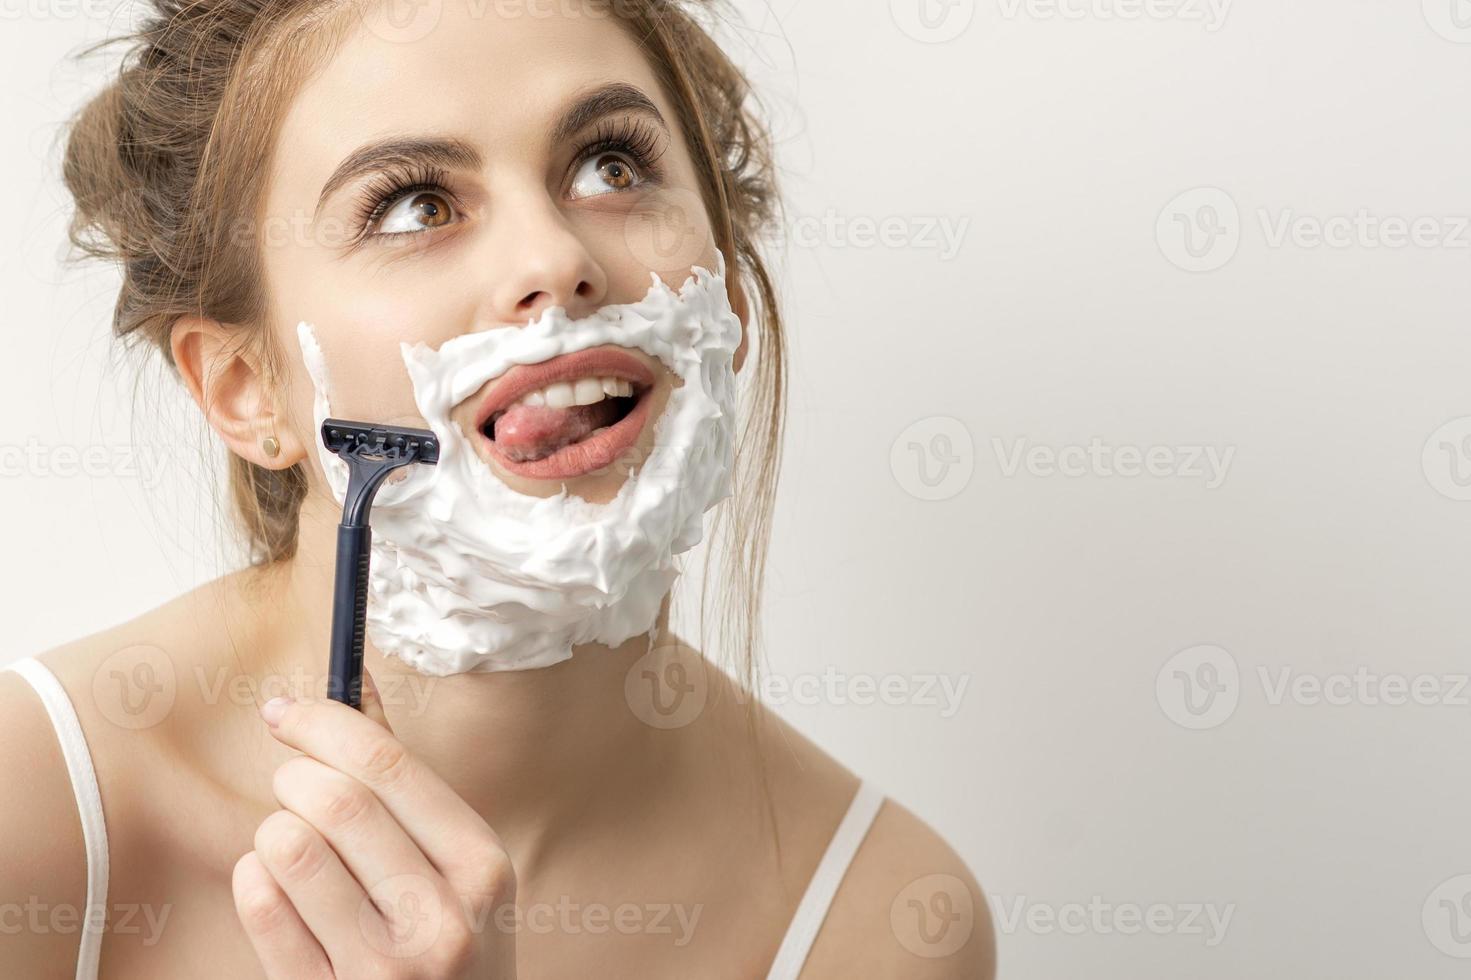 vrouw scheren gezicht met scheermes foto